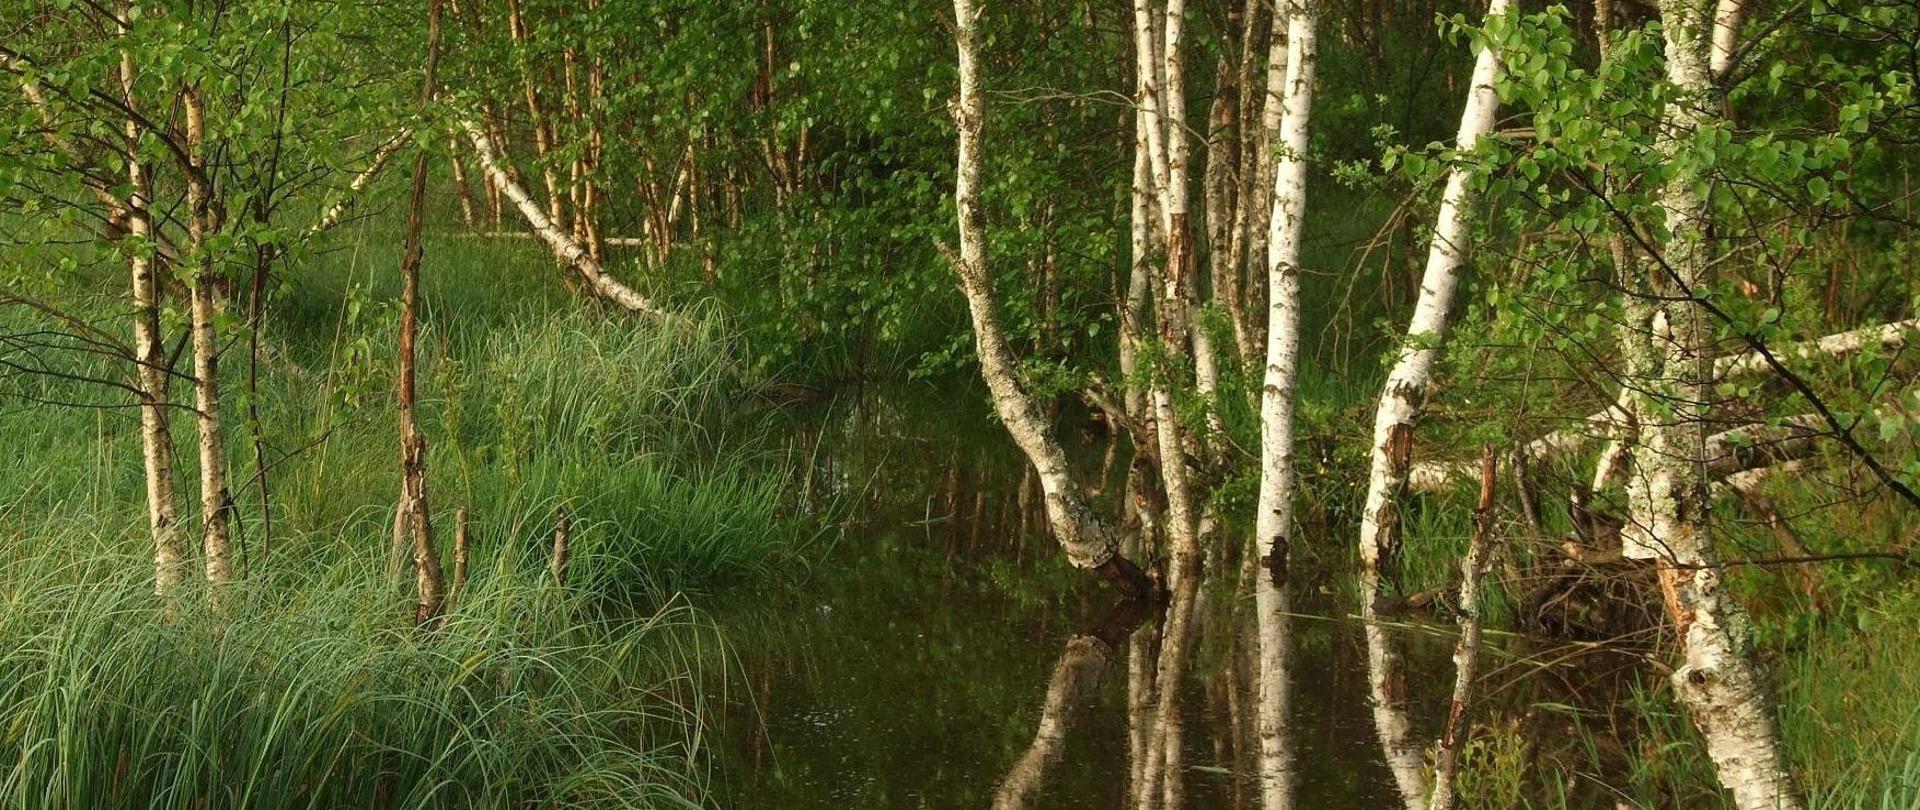 Piękne zdjęcie przedstawiające drzewa z rodzaju brzoza - betula, zanurzone w wodzie, można również dostrzec, zielone turzyce, olsze